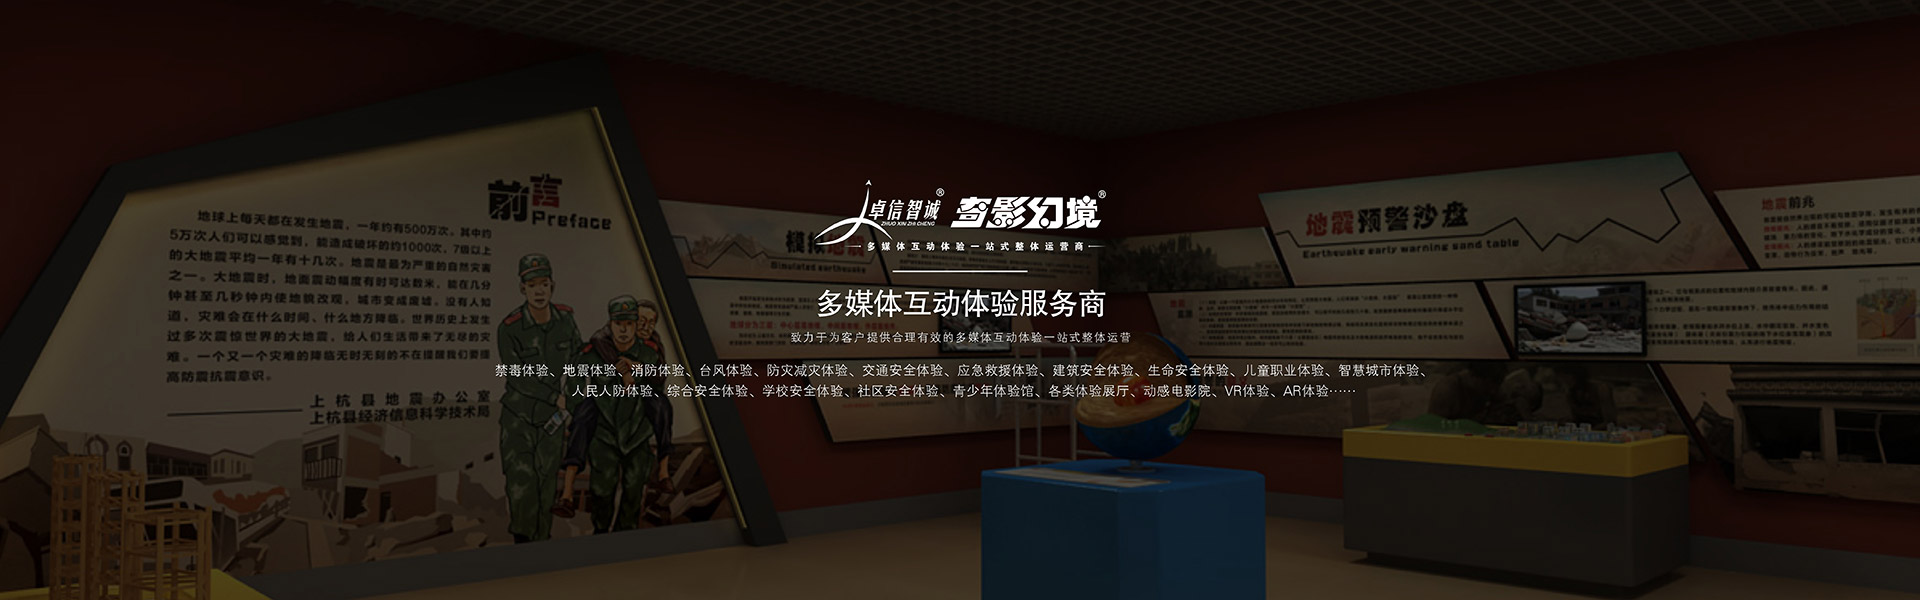 球幕影院VR数字展厅虚拟仿真数字媒体